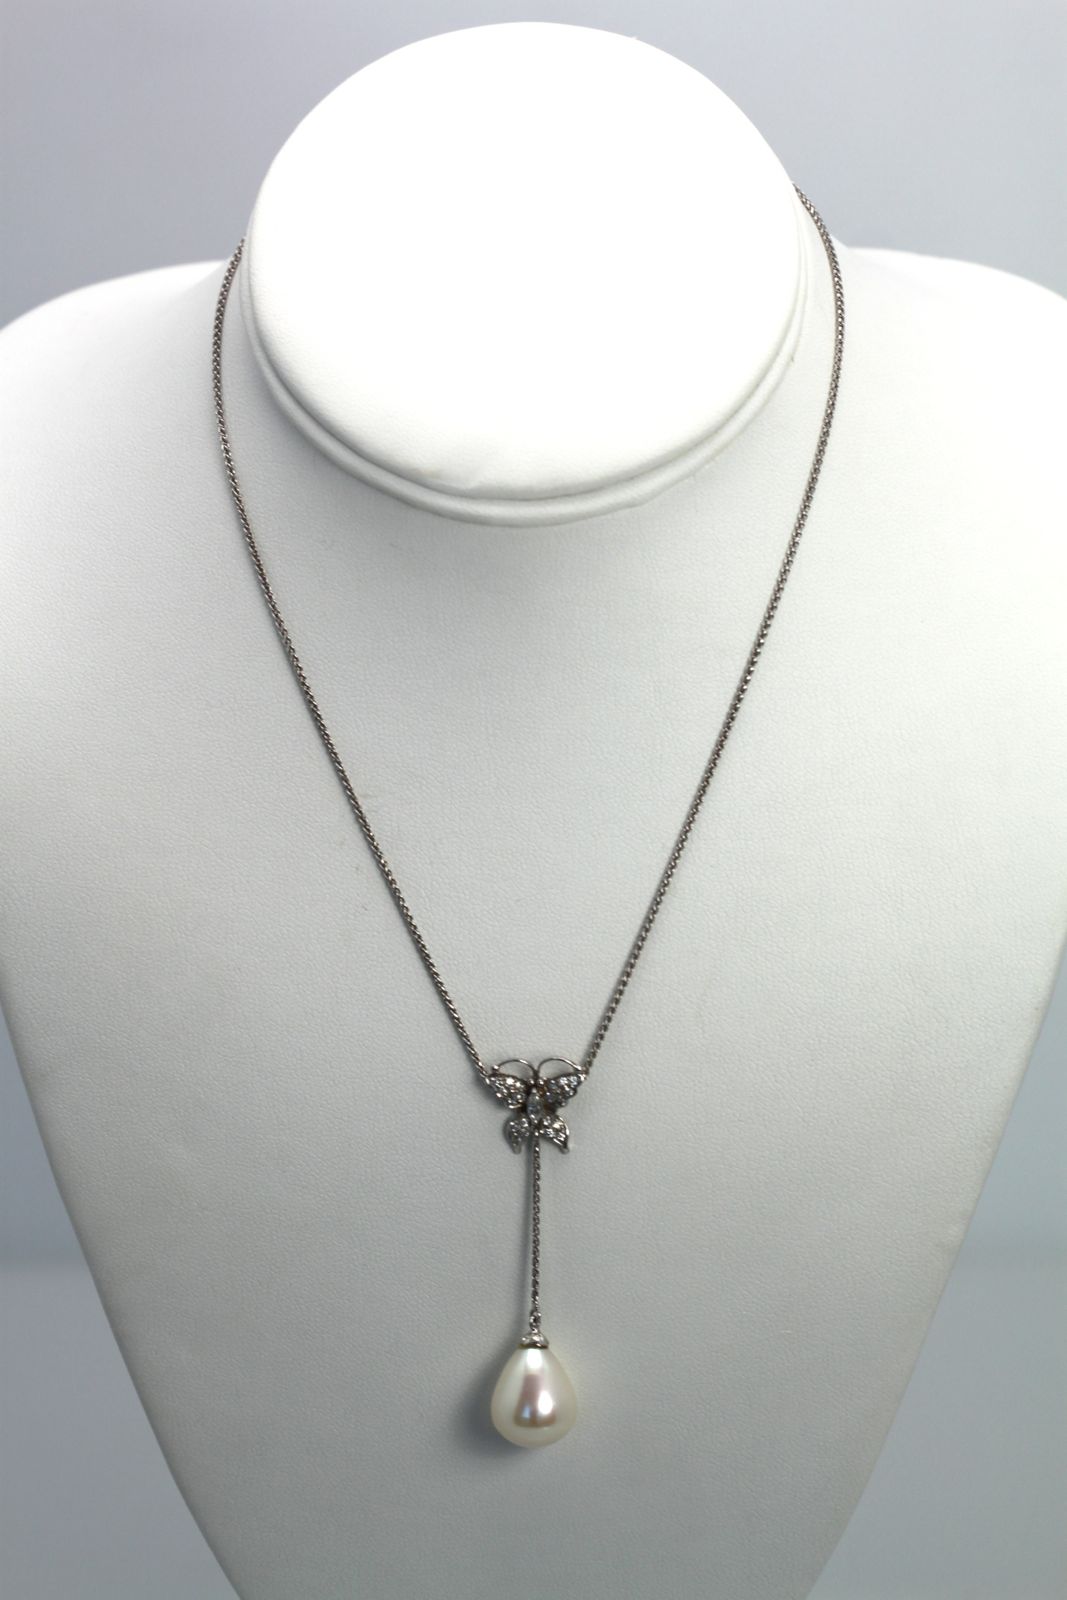 Diamond Butterfly Necklace Drop Pearl 18 Karat #4